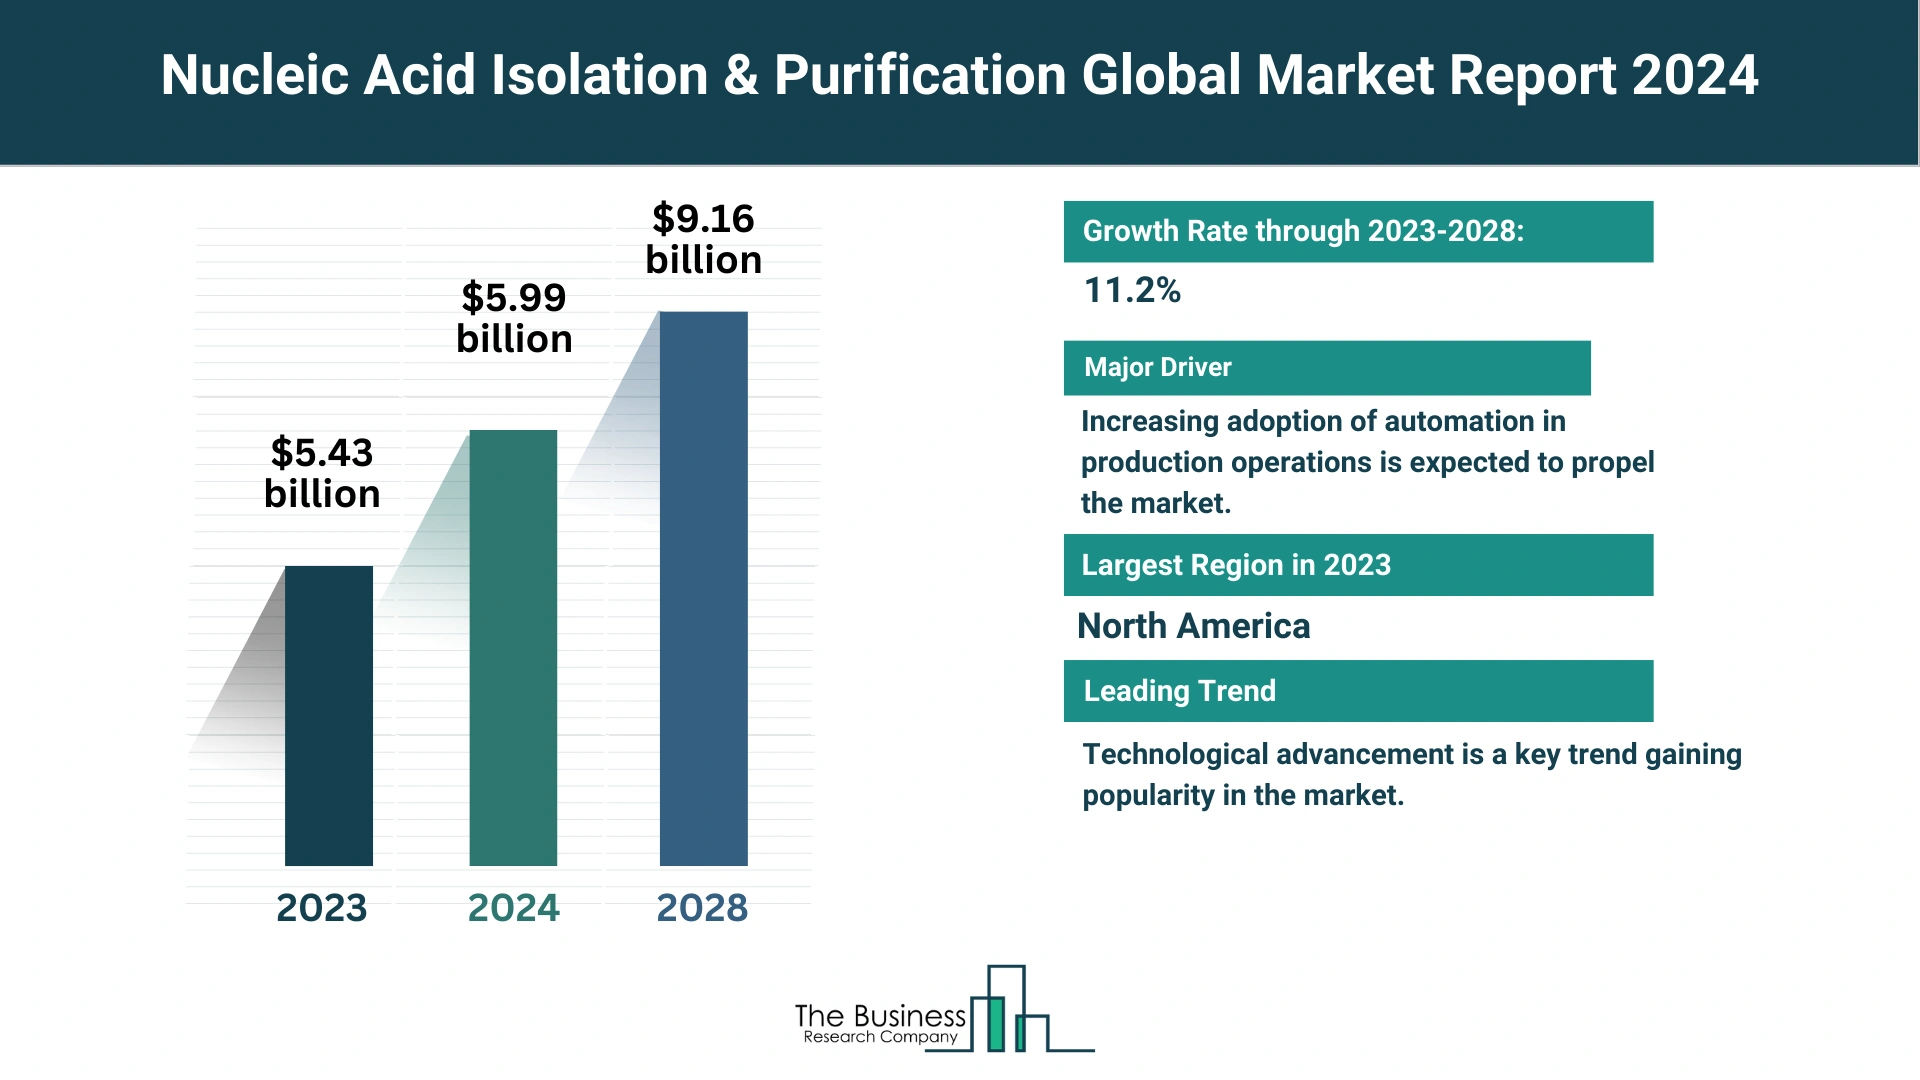 Global Nucleic Acid Isolation & Purification Market